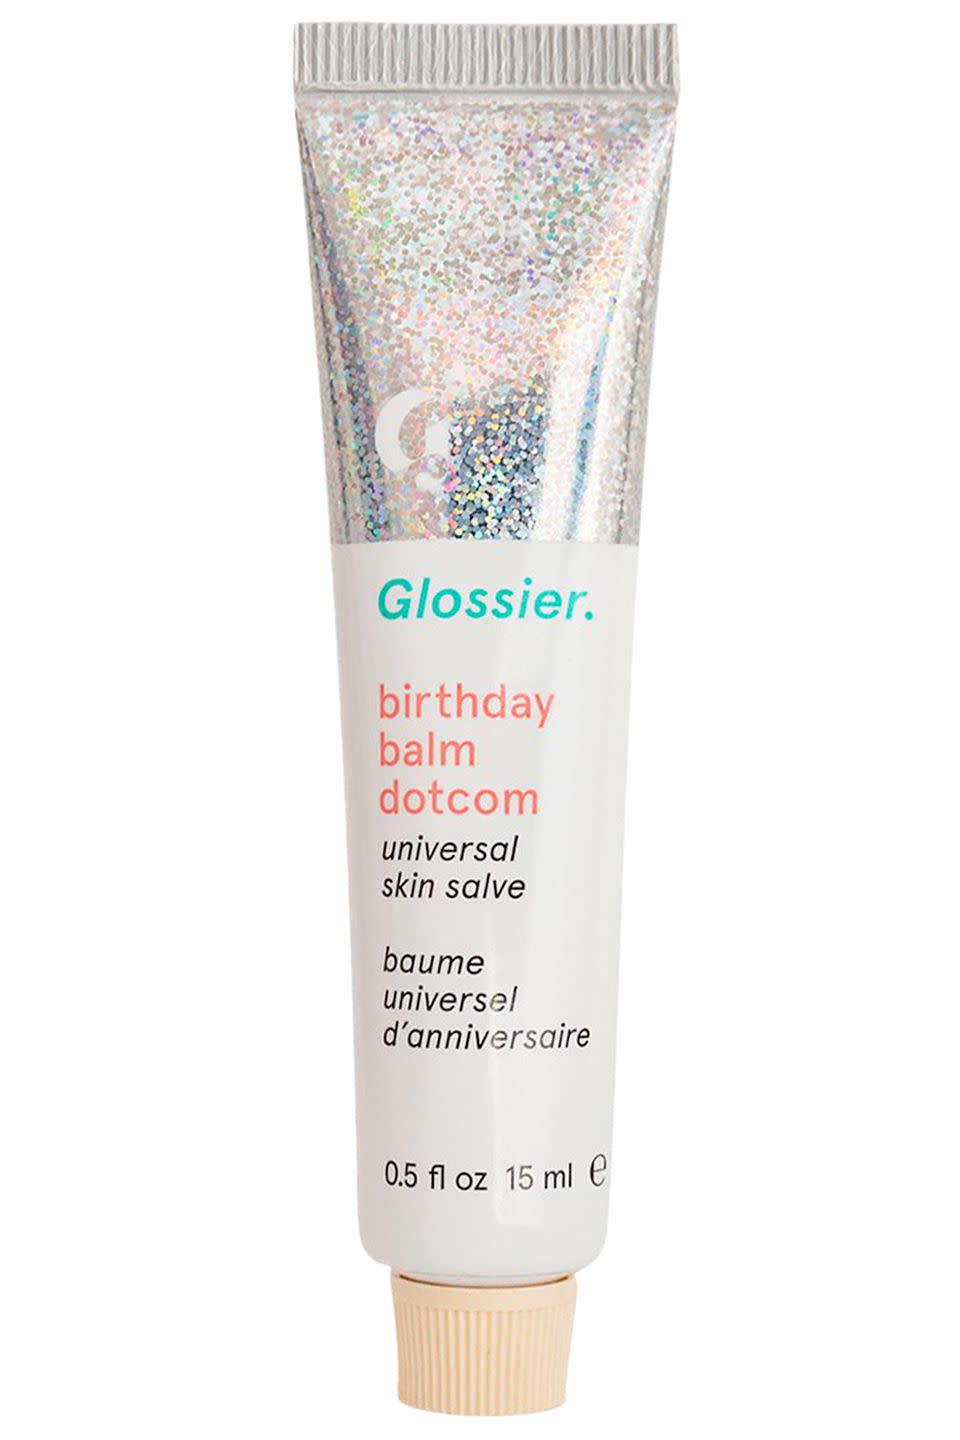 2) Glossier Birthday Balm DotCom, £10